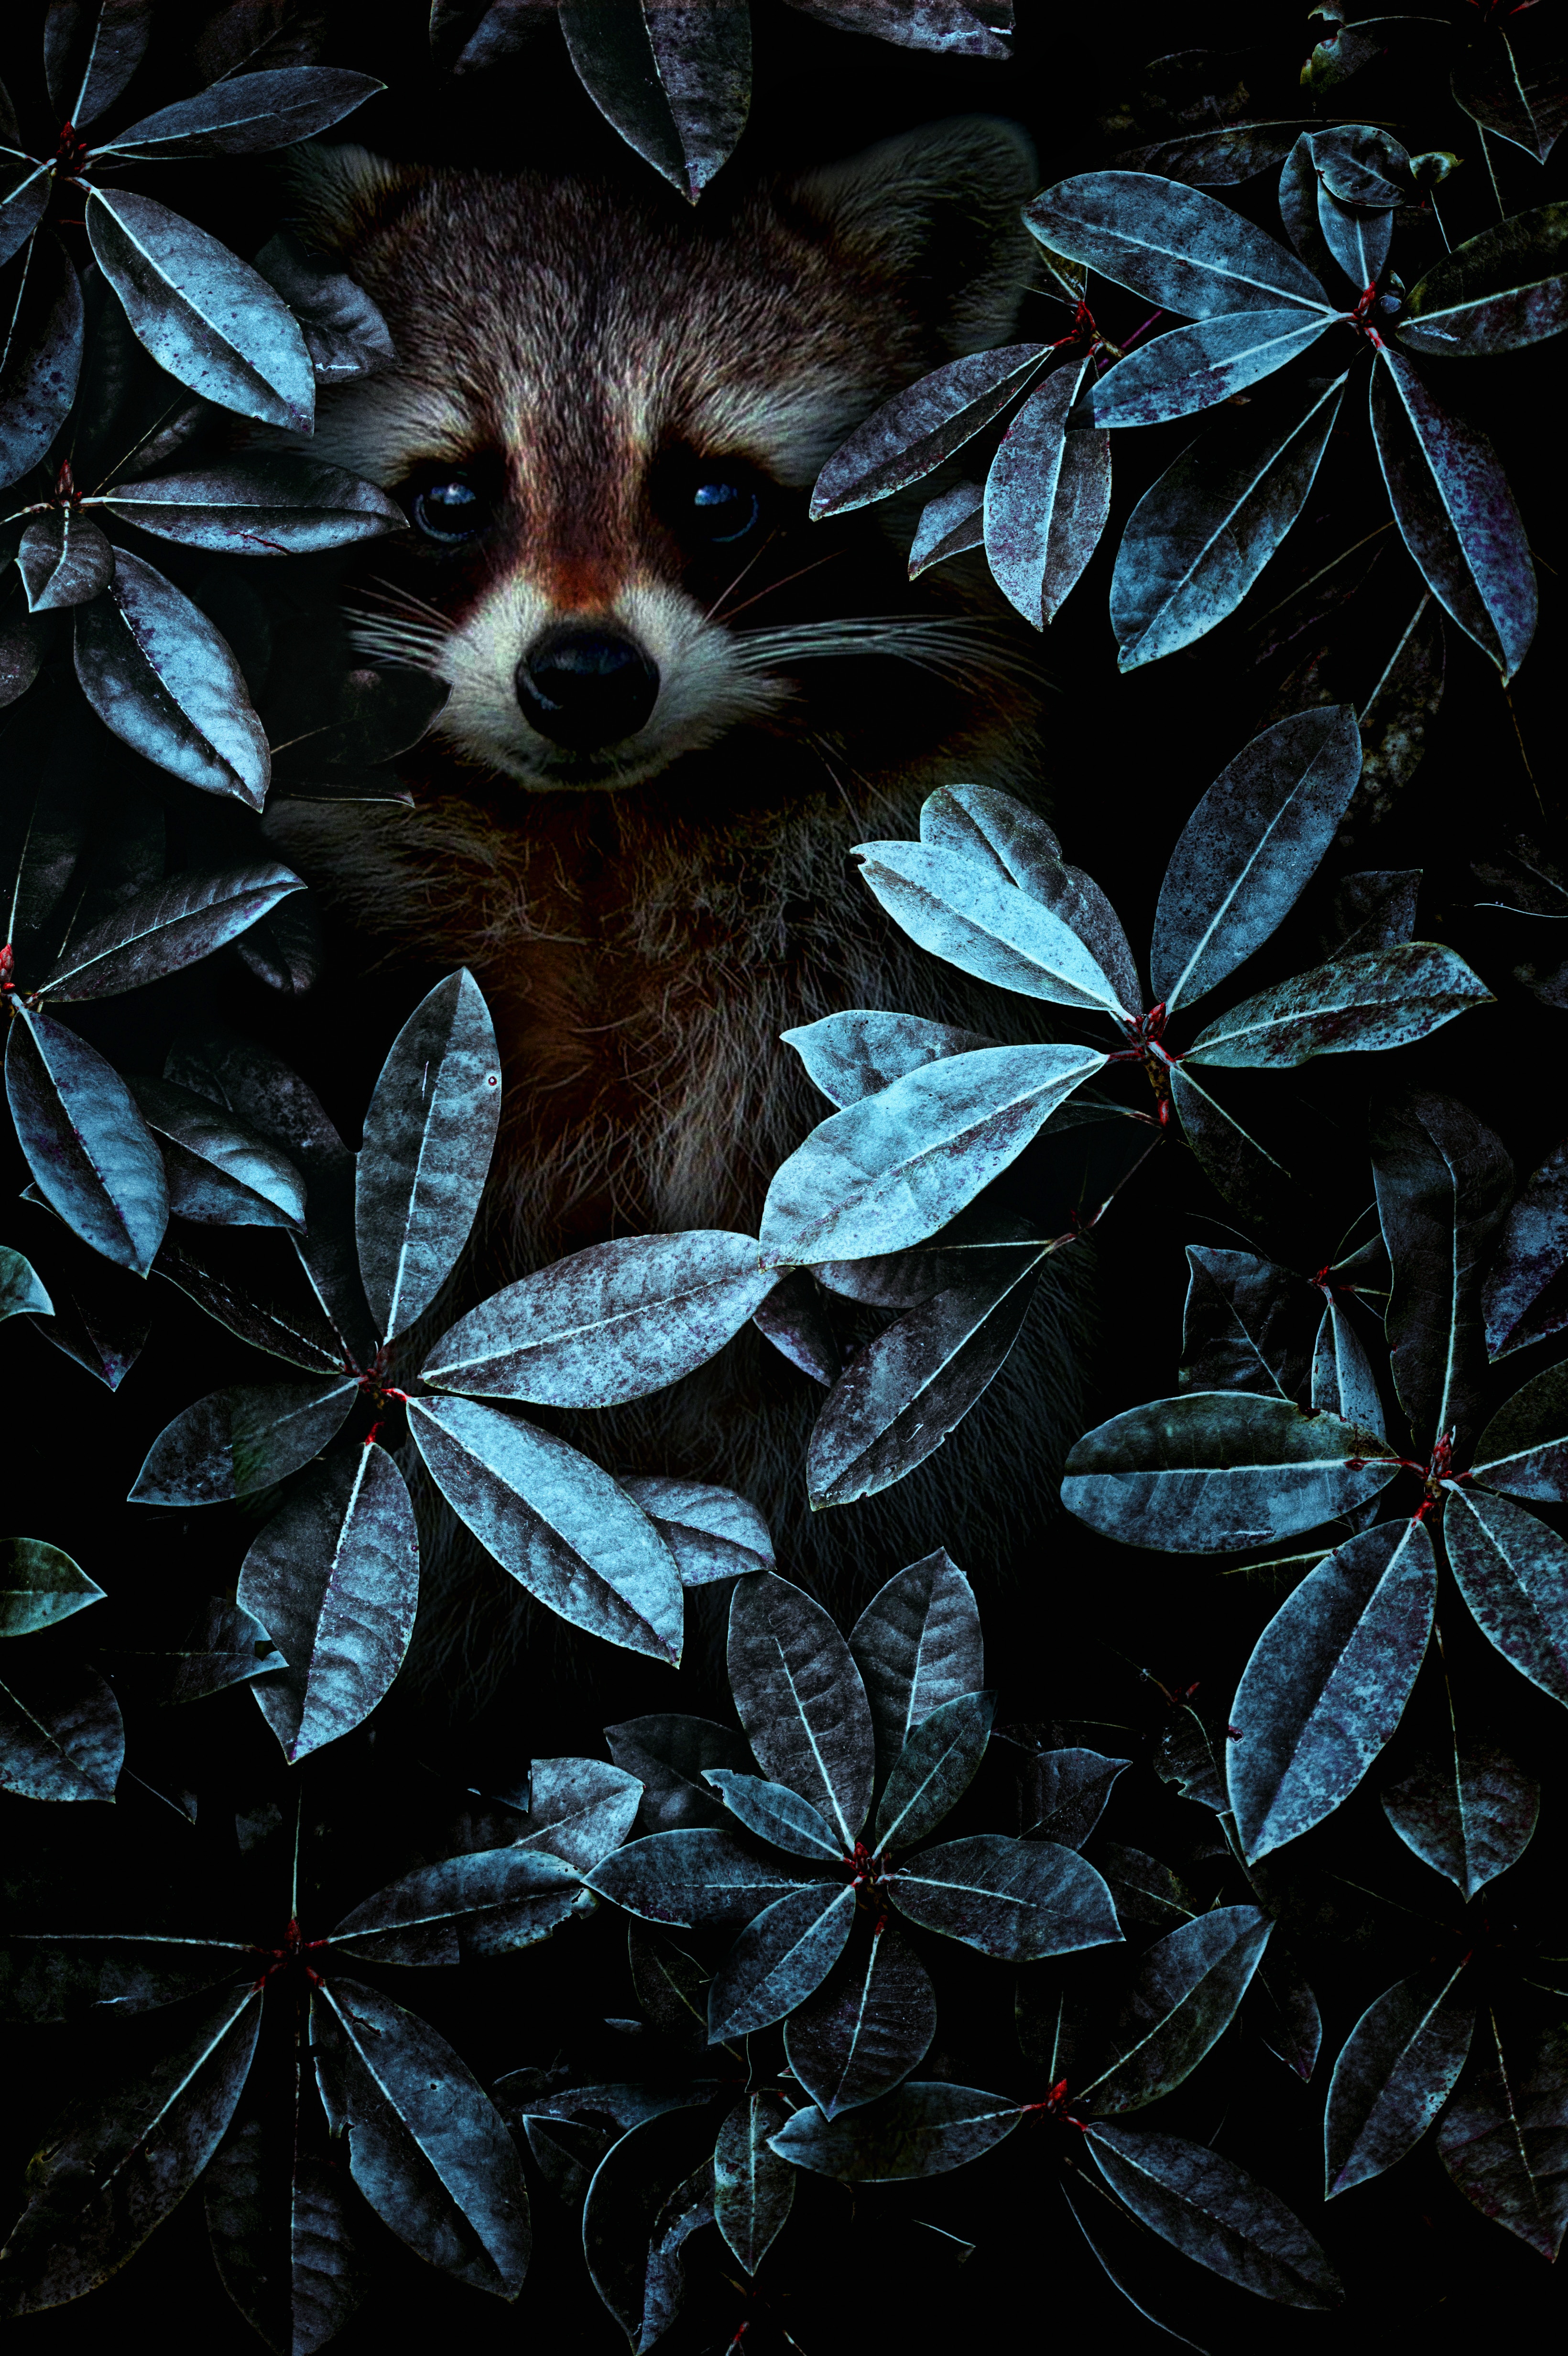 The raccoon hid =)